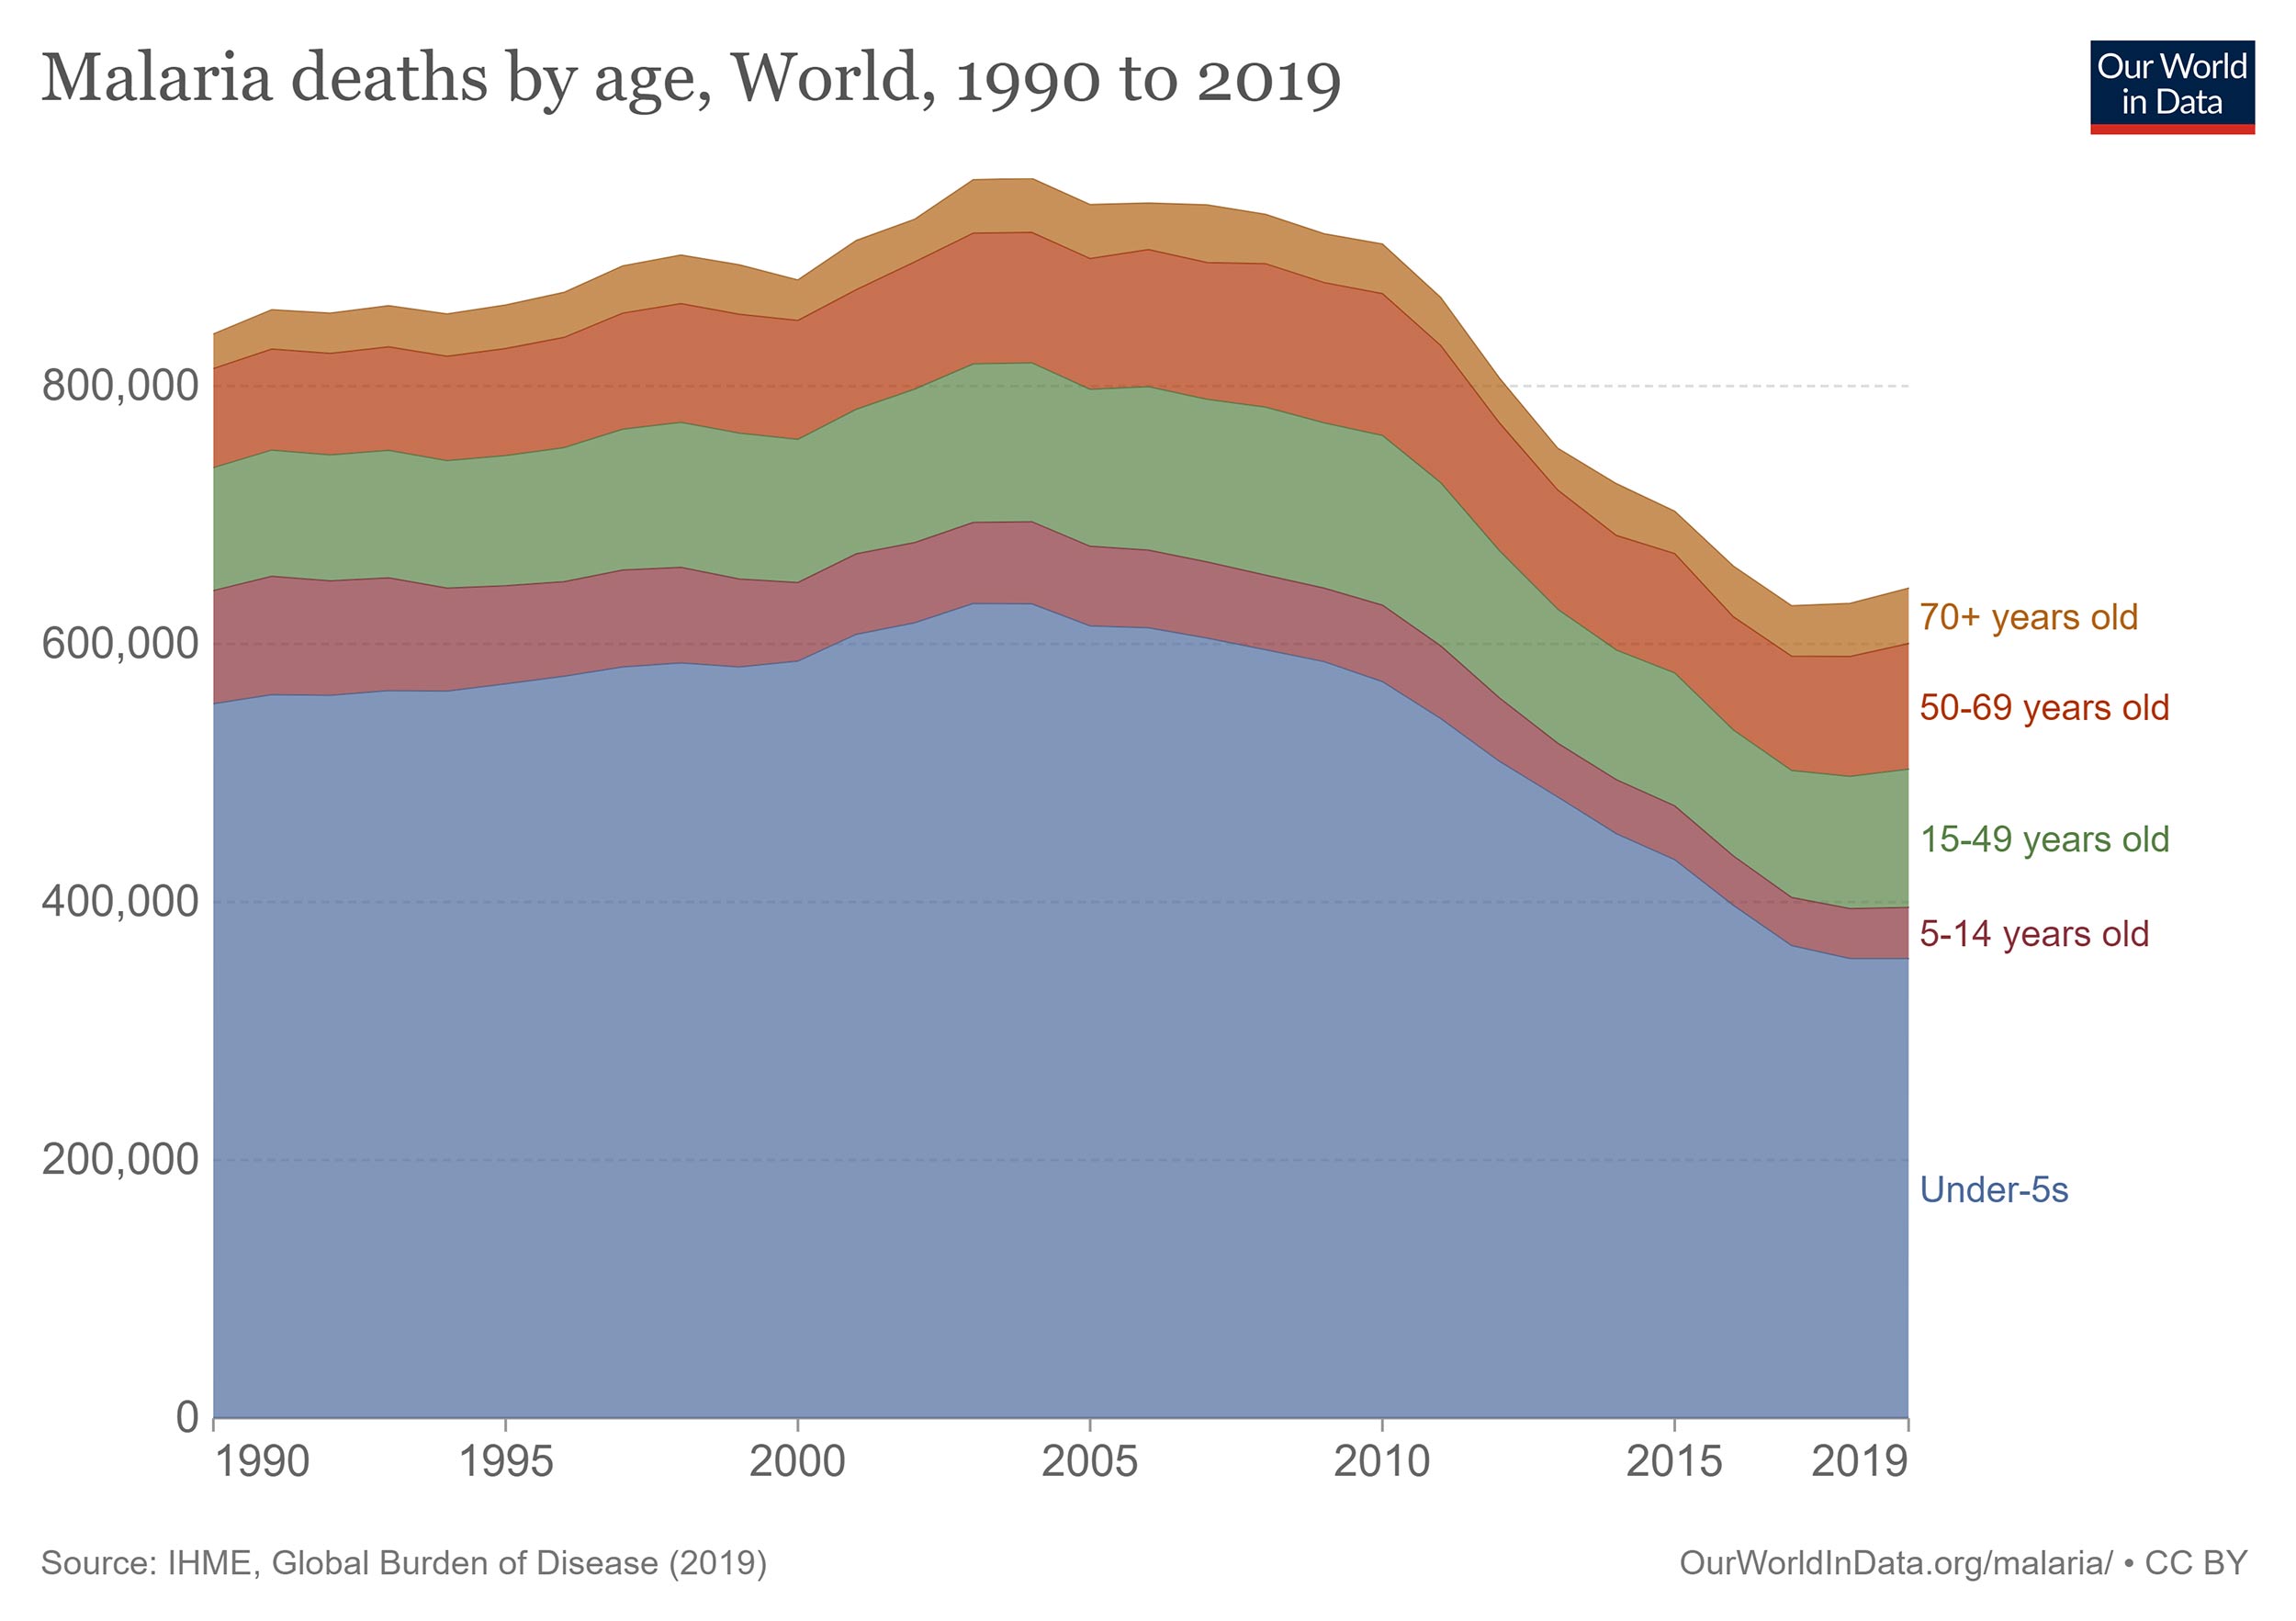 Ett diagram som visar antal dödsfall i Malaria uppdelat på åldersgrupper, 1990-2019. Diagrammet visar att den absolut största gruppen som drabbats är barn yngre än 5 år.